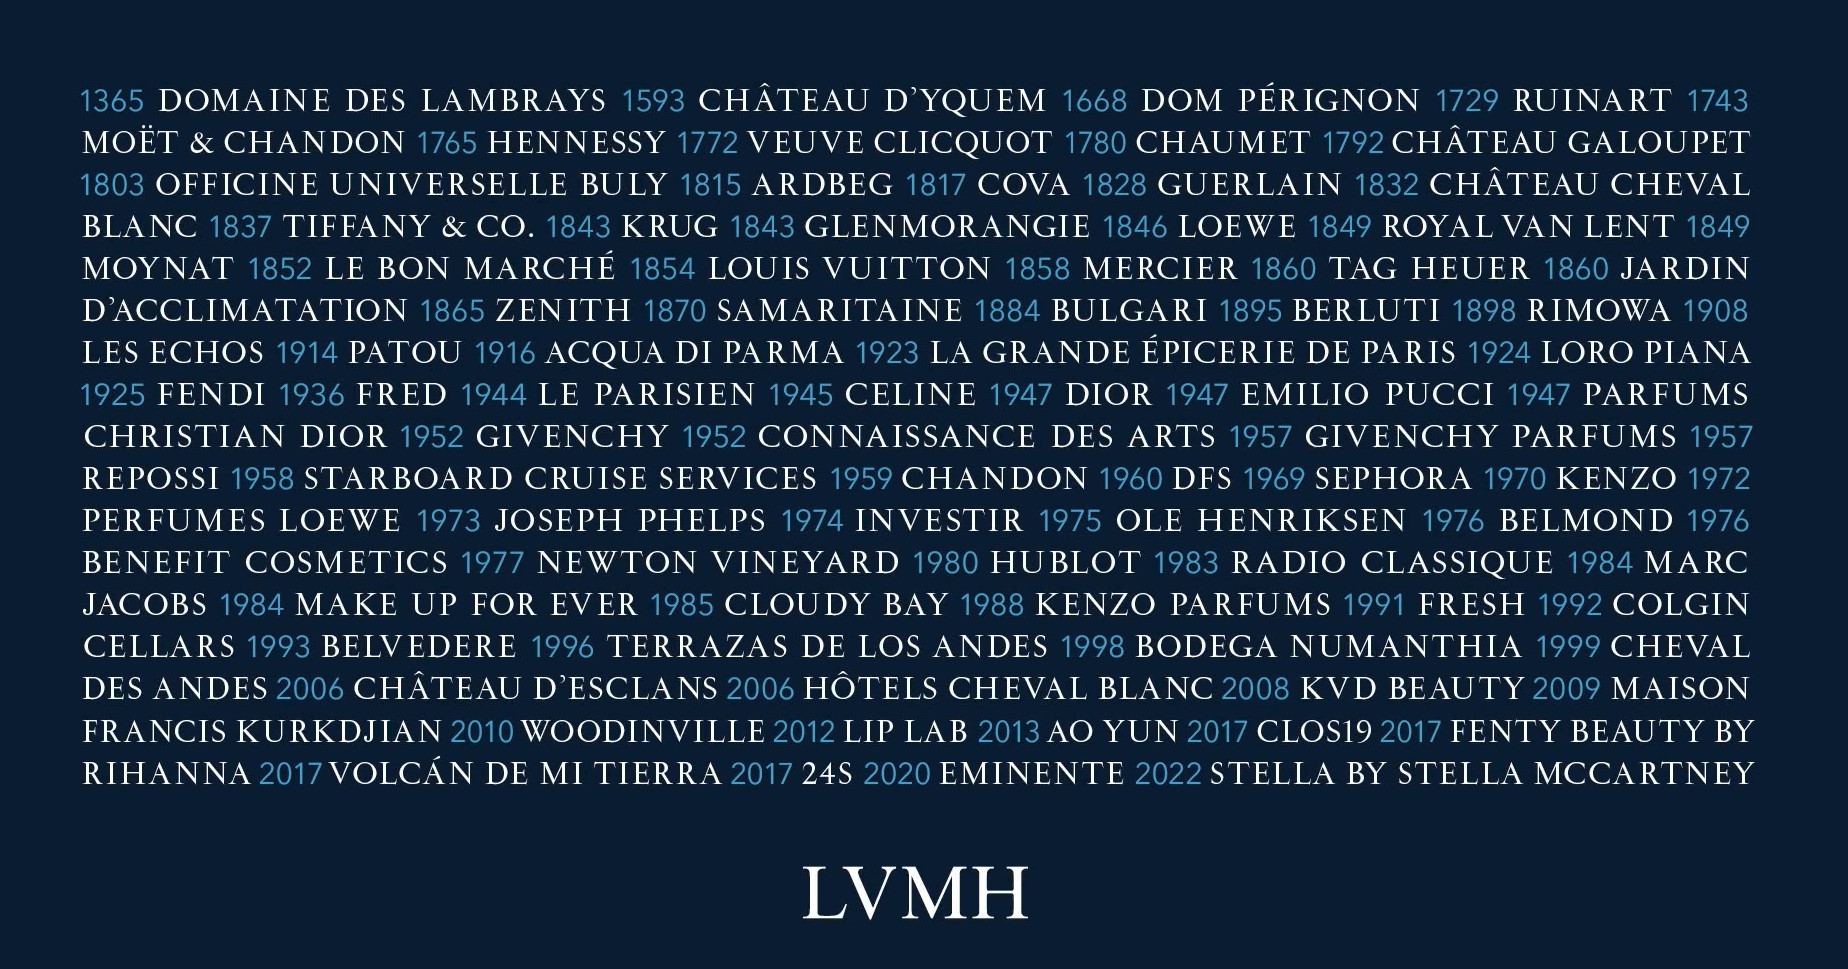 Geschichte des Luxusgüter-Konzerns LVMH